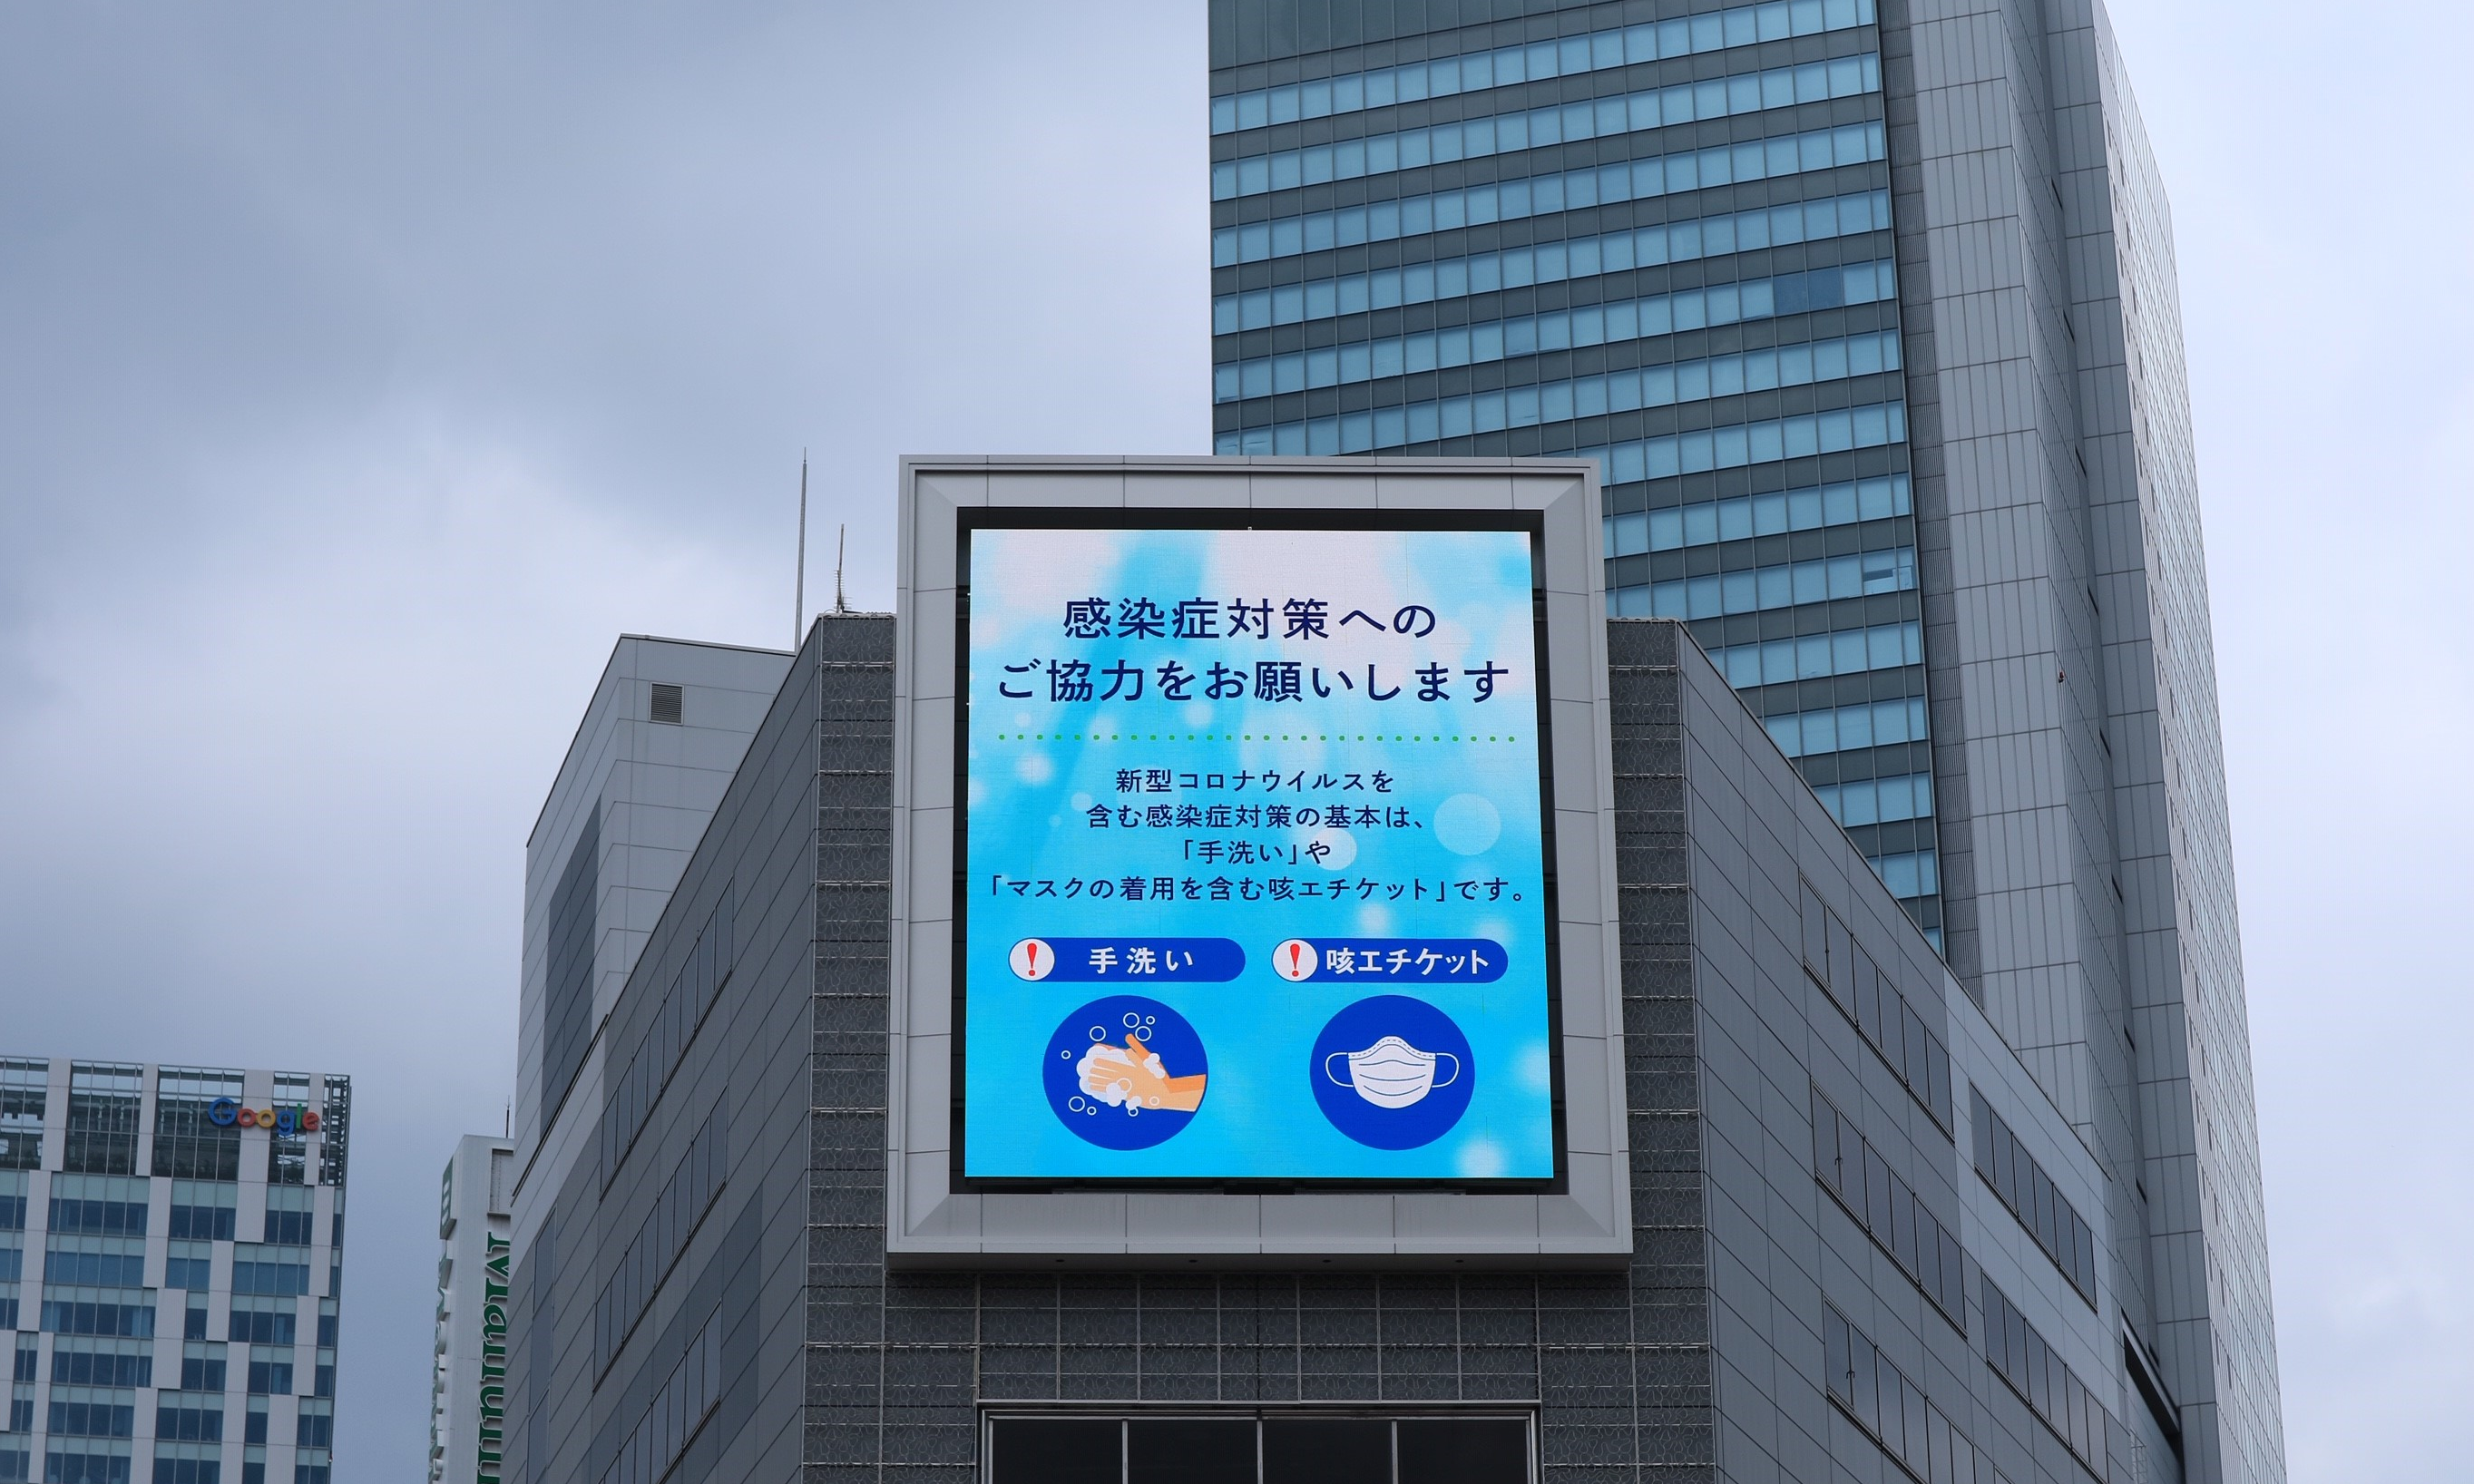 渋谷宮益坂ビジョン GOSAROにて “コロナウイルス対策情報発信中”